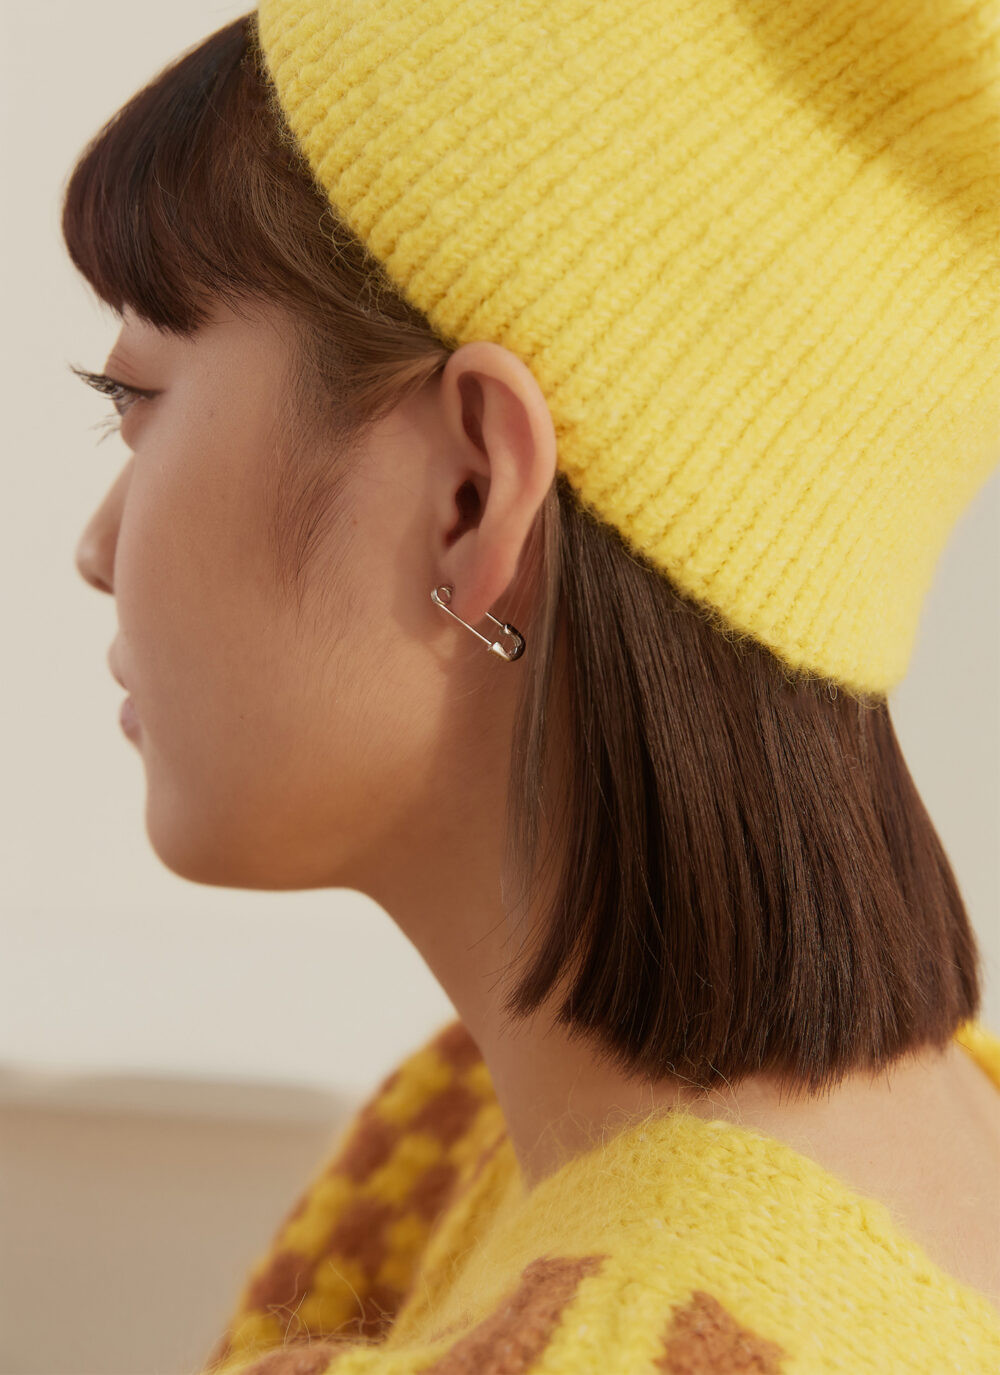 Eco安珂,韓國飾品,韓國耳環,韓國925純銀耳環,925純銀耳環,純銀耳環,簡約耳環,貼耳耳環,小耳環,別針耳環